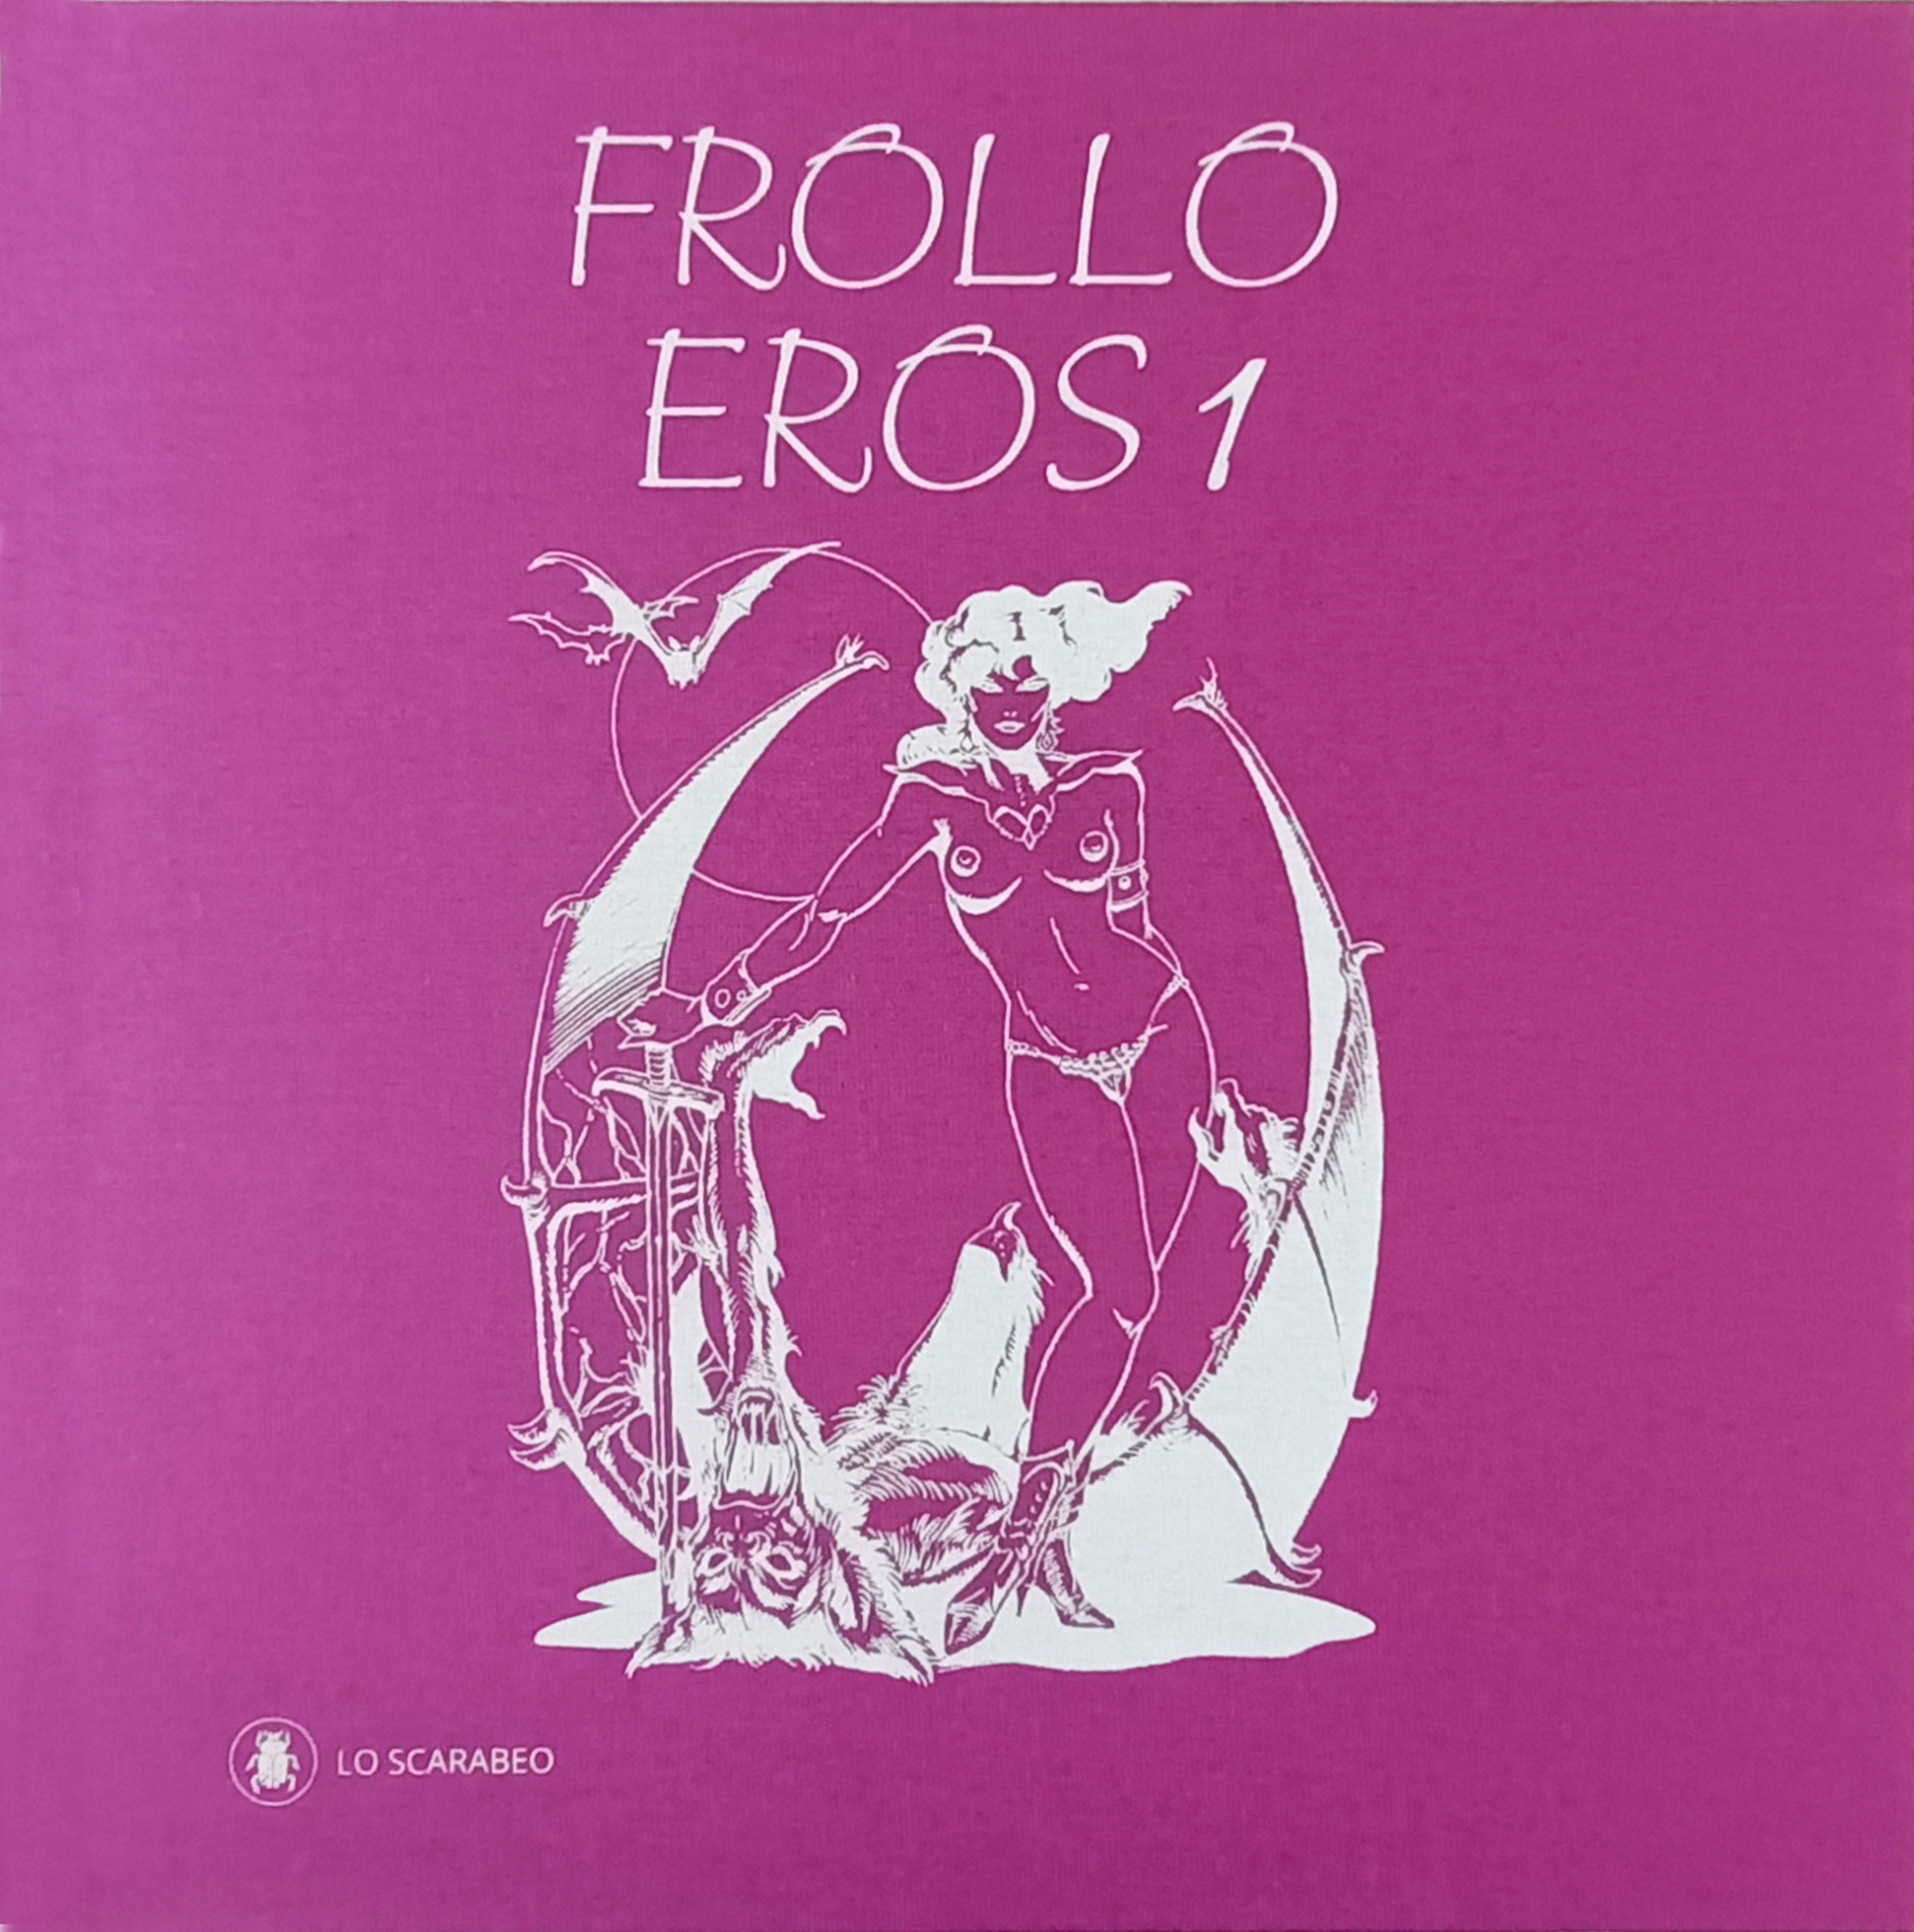 Frollo - Eros 1 - Deluxe Edition